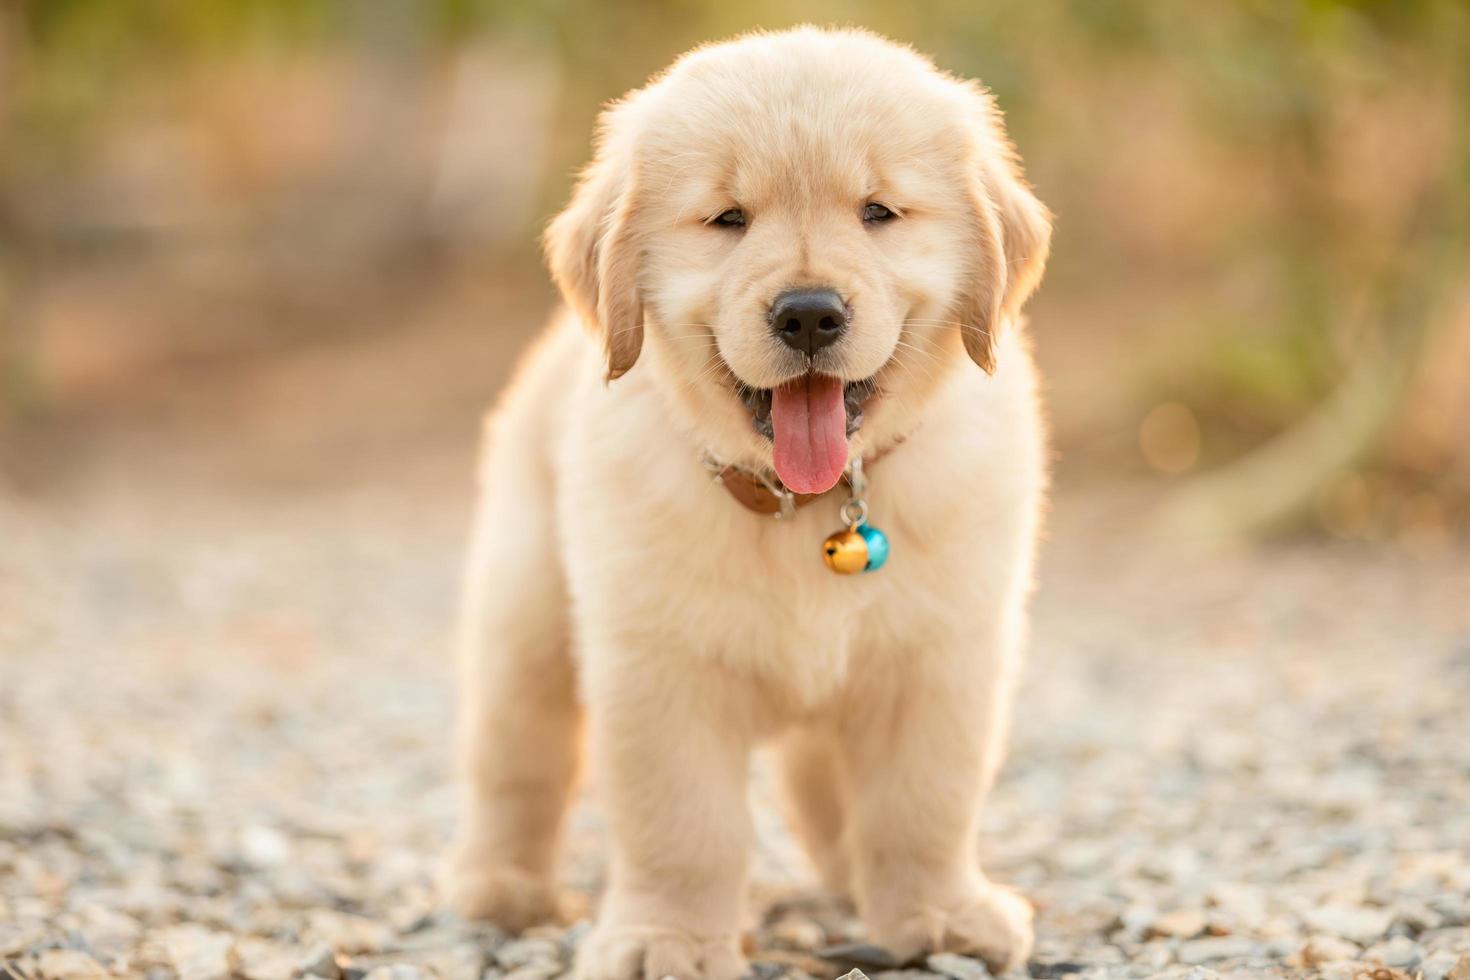 Cute puppy Golden Retriever standing in the outdoor garden on blur background photo